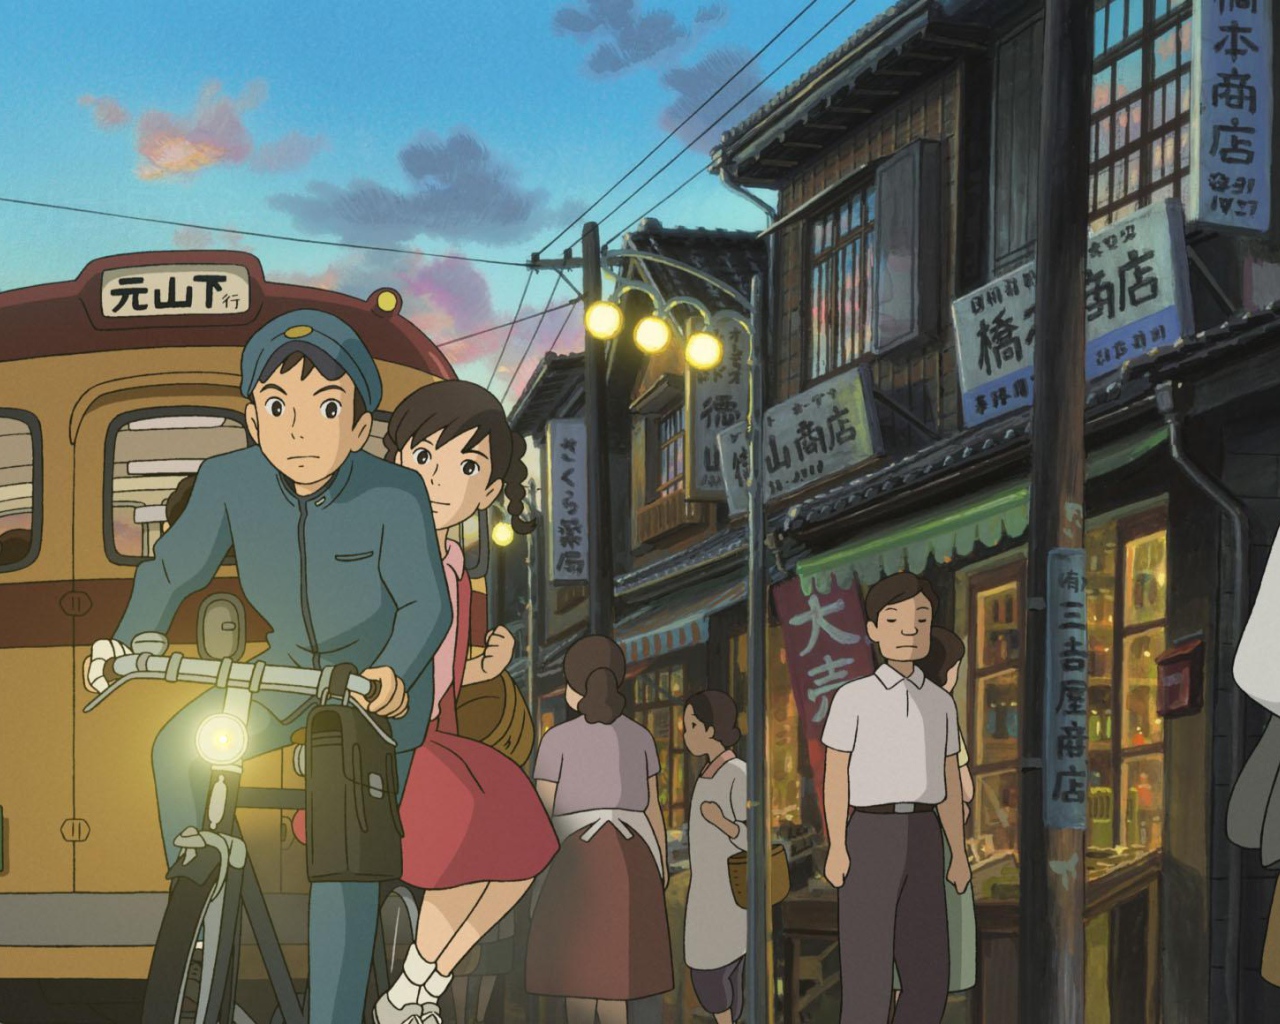 Аниме мультфильм Миядзаки Со склонов Кокурико, парень и девушка на велосипеде